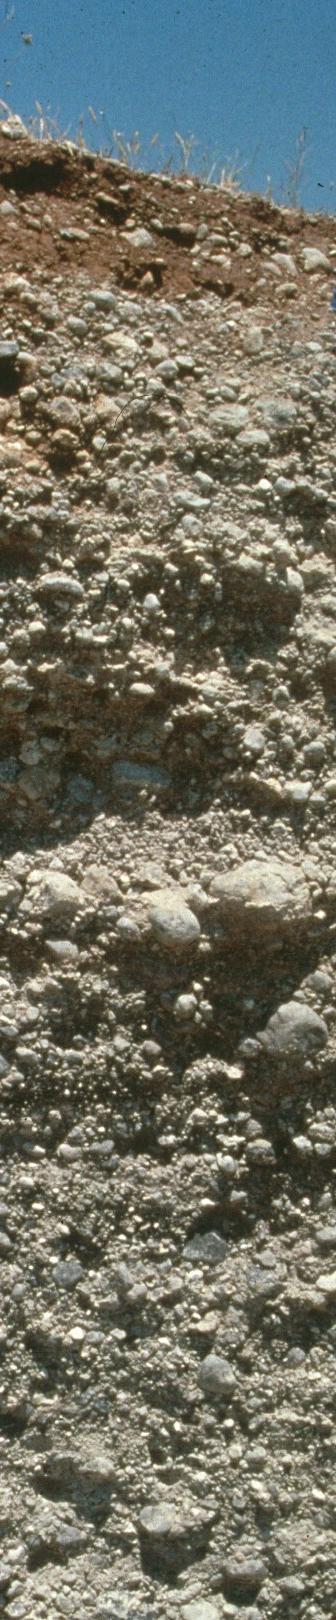 Összefüggő kemény kőzet Az összefüggő kemény kőzet a talaj alatt húzódó szilárd, ágyazati kőzet, melybe nem tartoznak bele a cementált